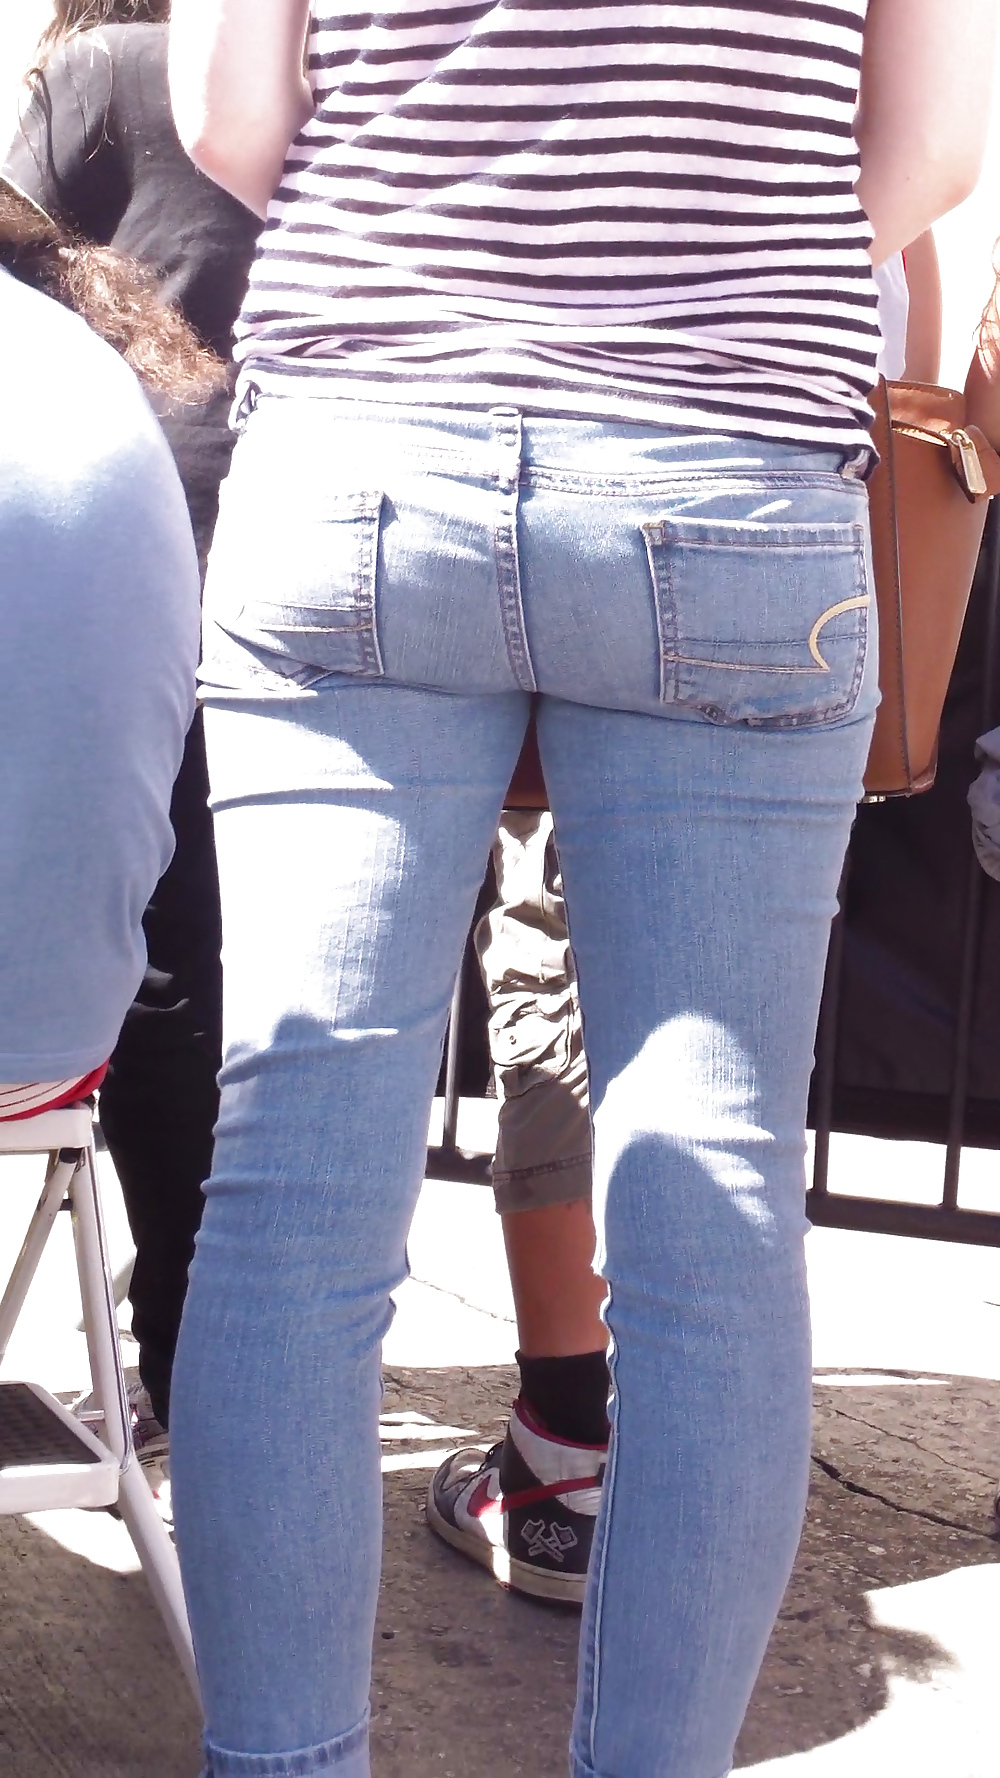 Teen ass & close up butt in jeans #19969088